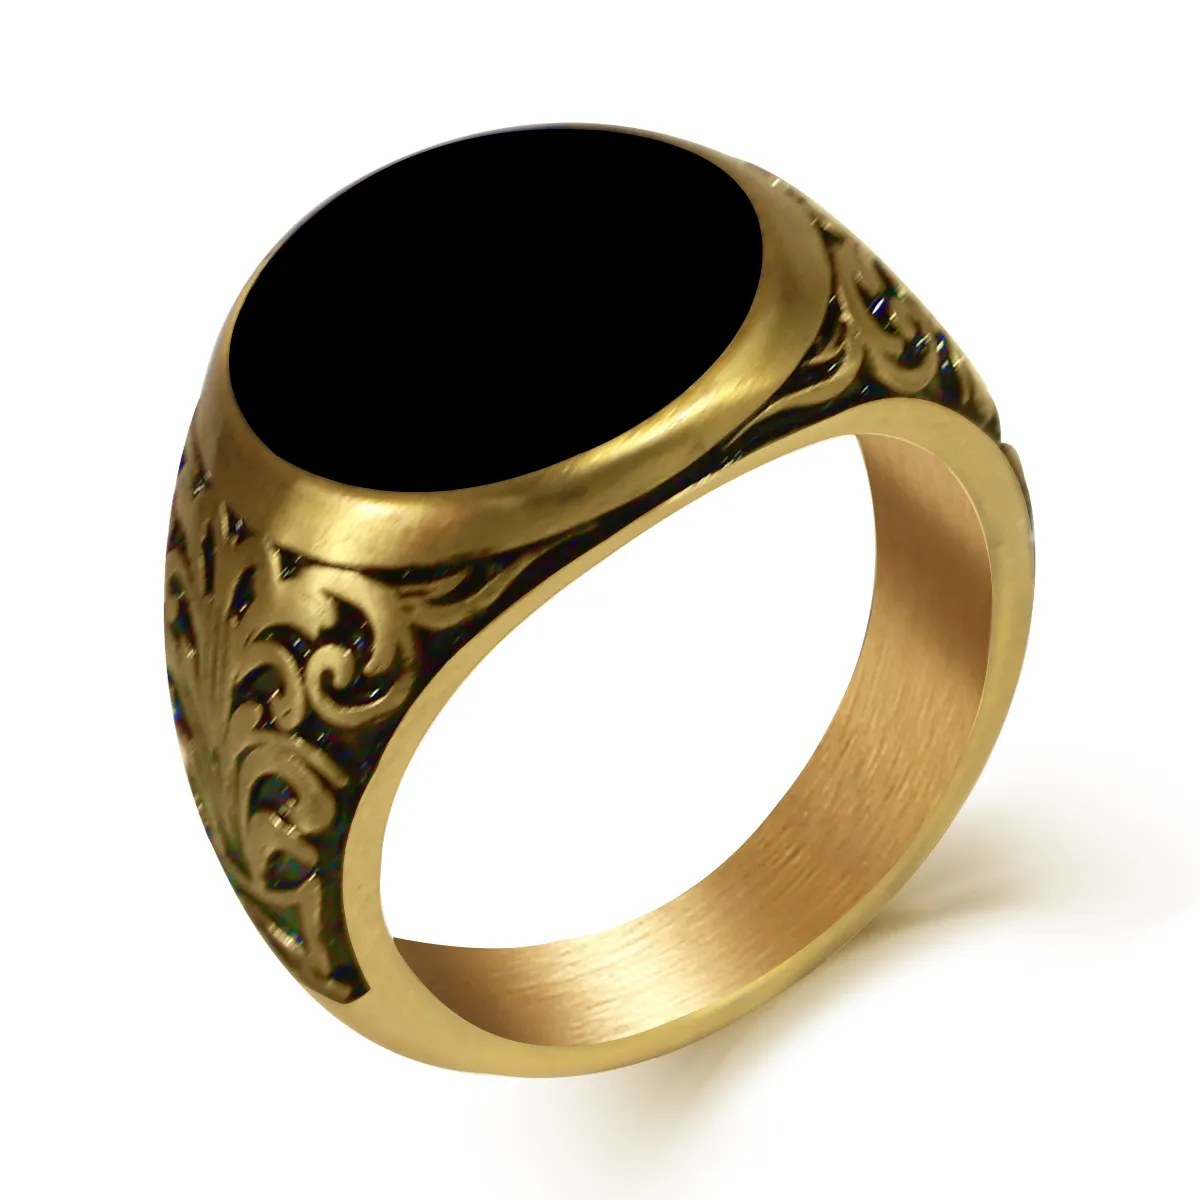 316L ผู้ชายโลหะที่กำหนดเองแหวนช่องว่างชุบทองแหวนนิ้วออกแบบแฟชั่นวินเทจที่เรียบง่ายเงินแหวนสแตนเลส